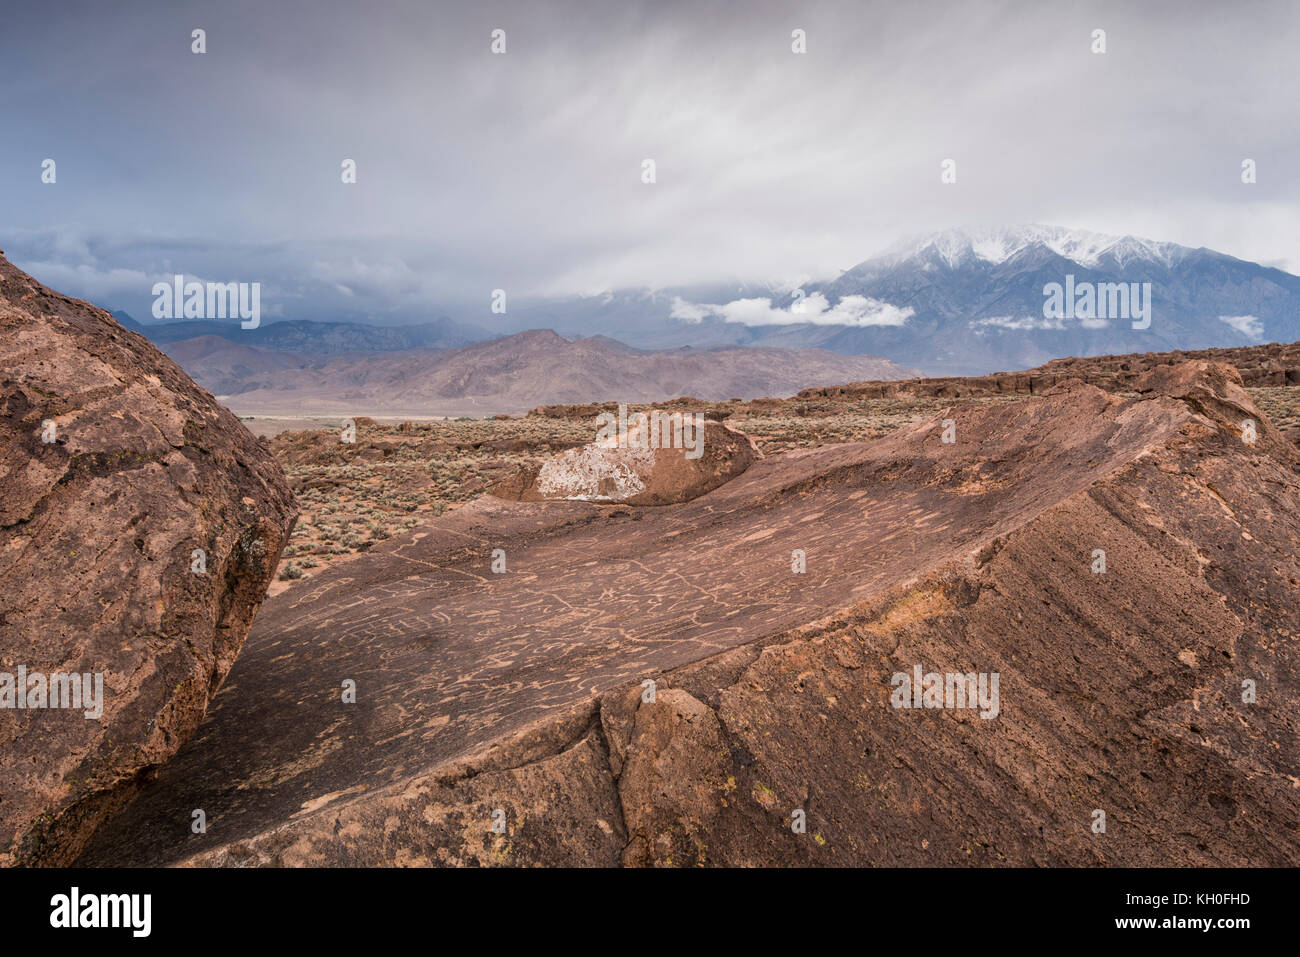 Sky Rock, un ciel face à série de pétroglyphes laissés par les Indiens Paiute-Shoshone il y a des milliers d'années, est assis devant les montagnes de la Sierra Nevada. Banque D'Images